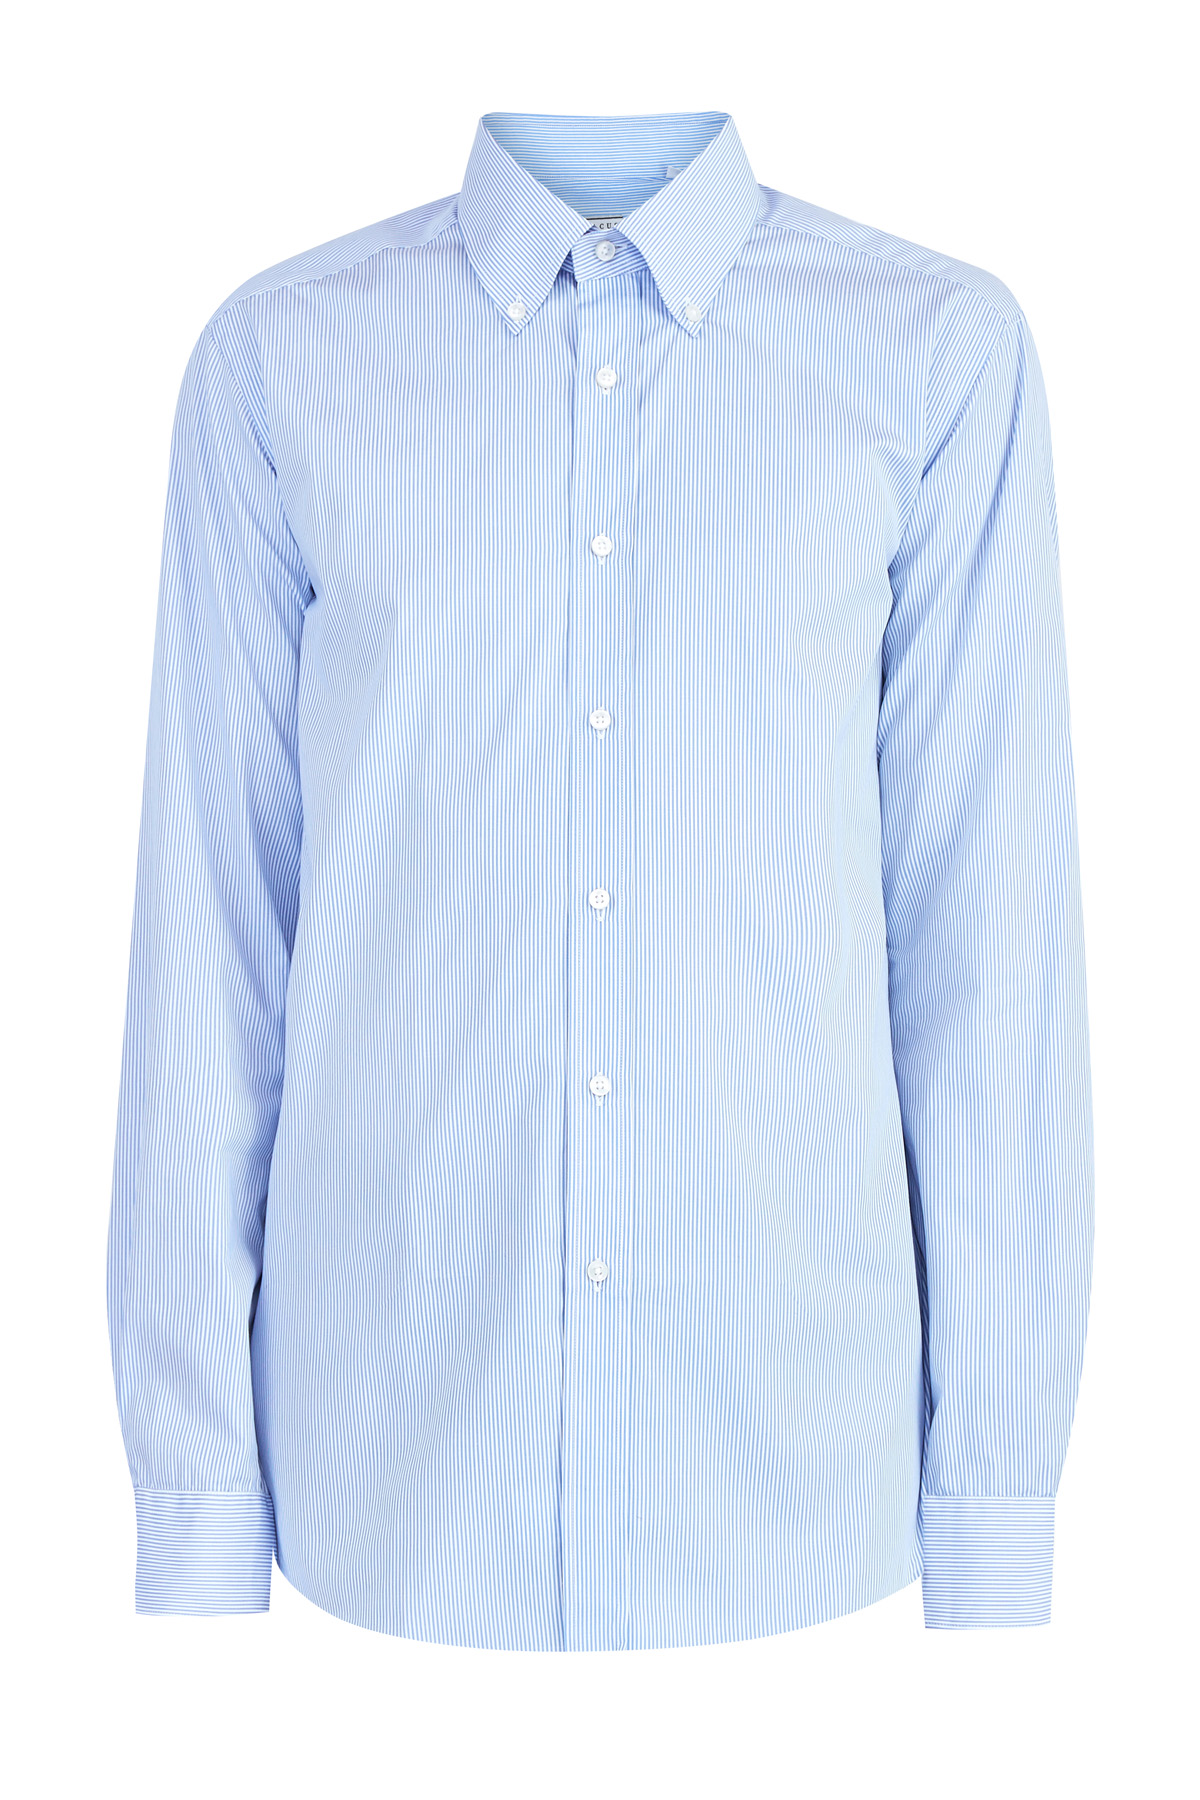 Базовая рубашка в полоску из поплина с кручением нити 100/2 XACUS, цвет голубой, размер 50;54;52 Базовая рубашка в полоску из поплина с кручением нити 100/2 - фото 1